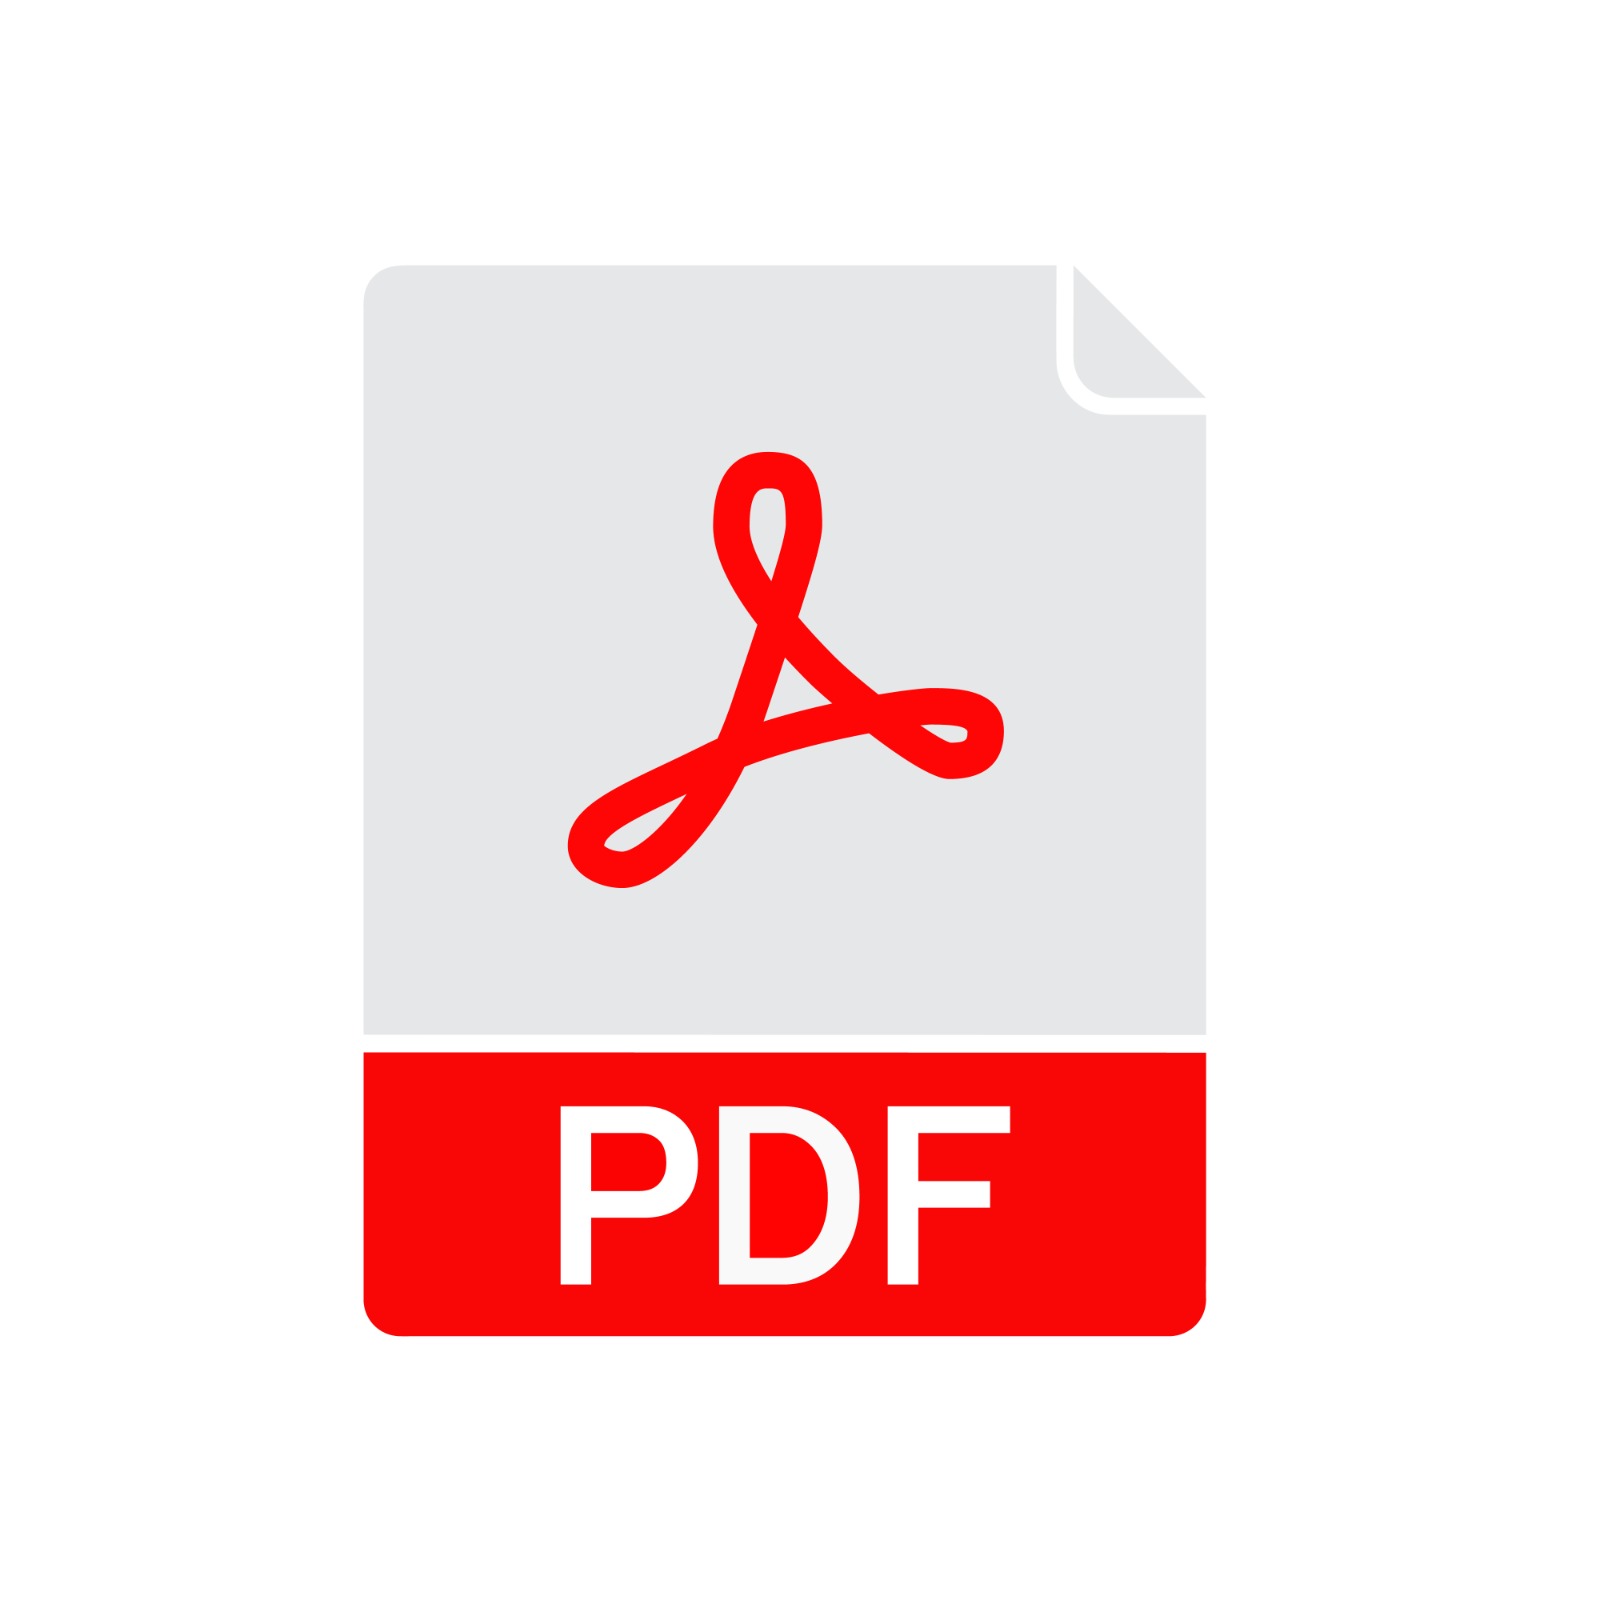 Imagem mostra o logotipo do formato de arquivo conhecido como PDF